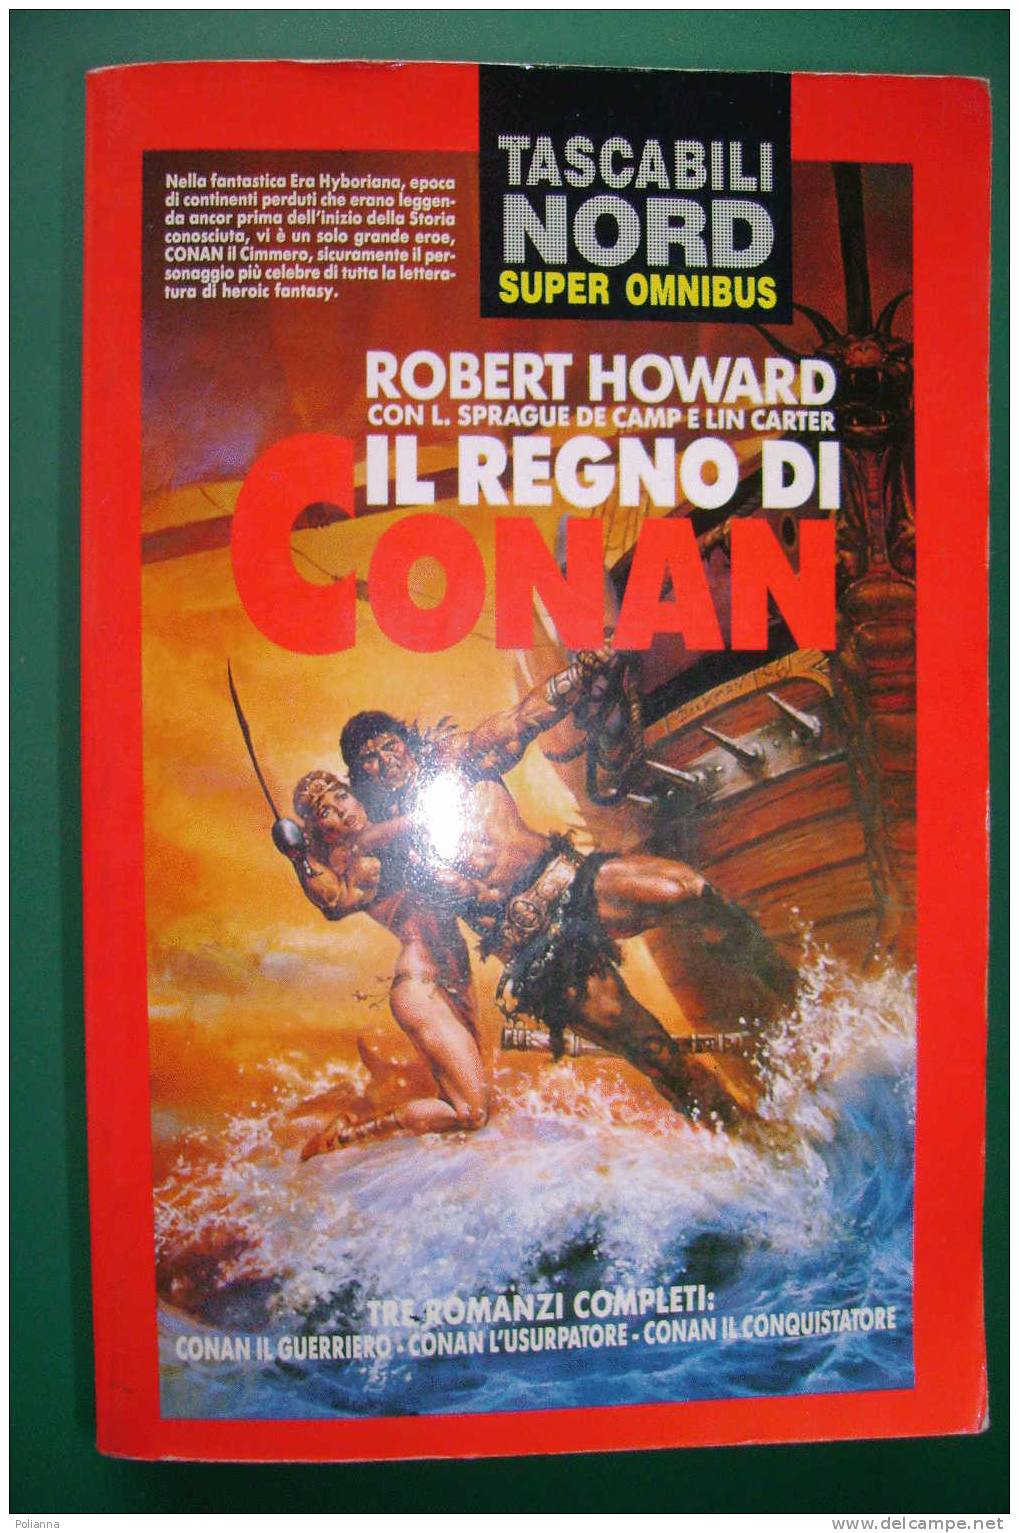 PDU/45 Robert Howard IL REGNO DI CONAN Tascabili Nord 1994/TRE ROMANZI COMPLETI - Sci-Fi & Fantasy